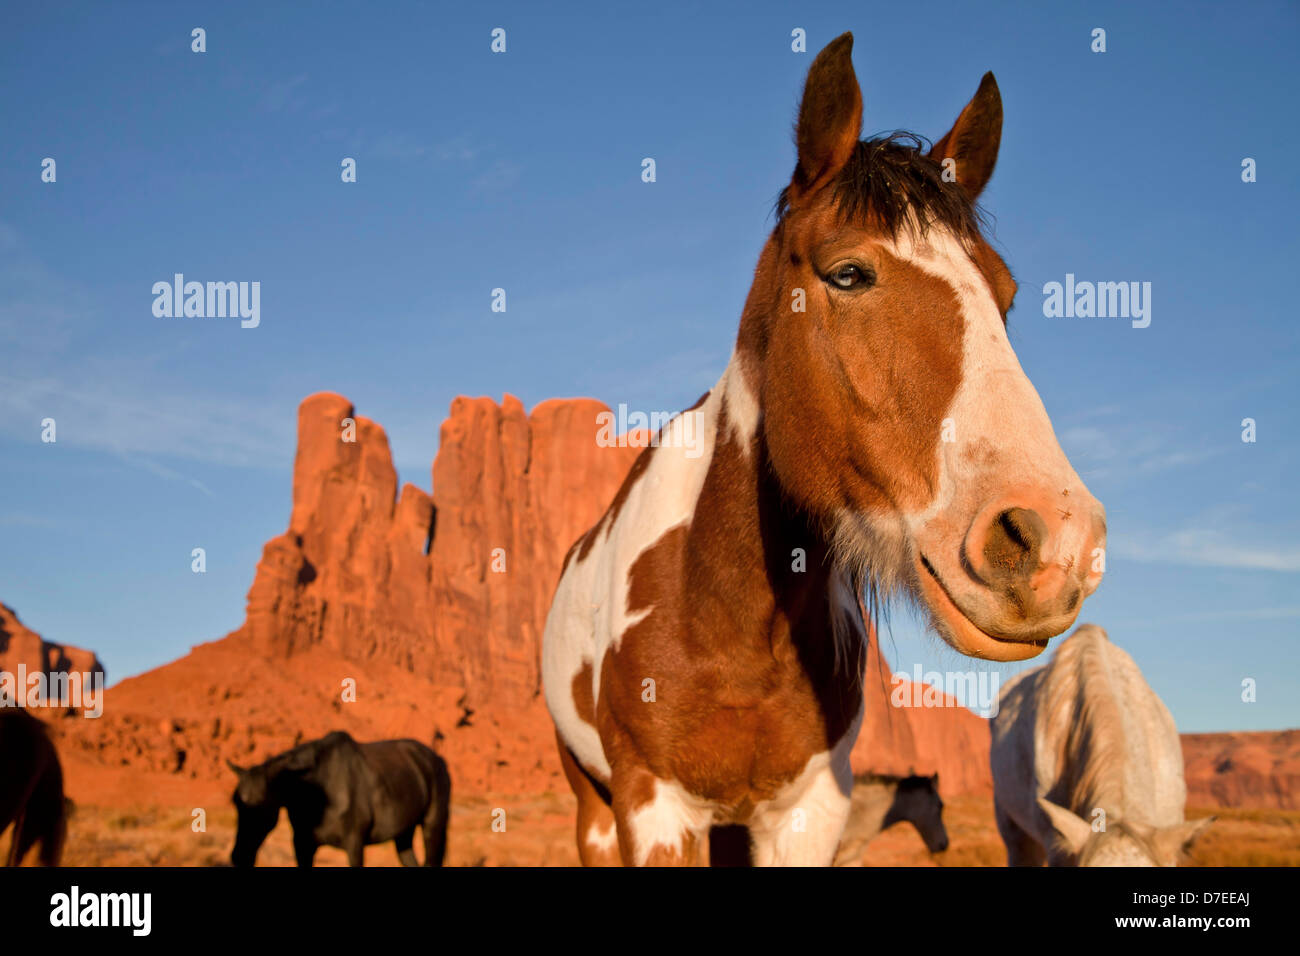 Navajo Indianer Pferde am Monument Valley Navajo Tribal Park, Vereinigte Staaten von Amerika, USA Stockfoto